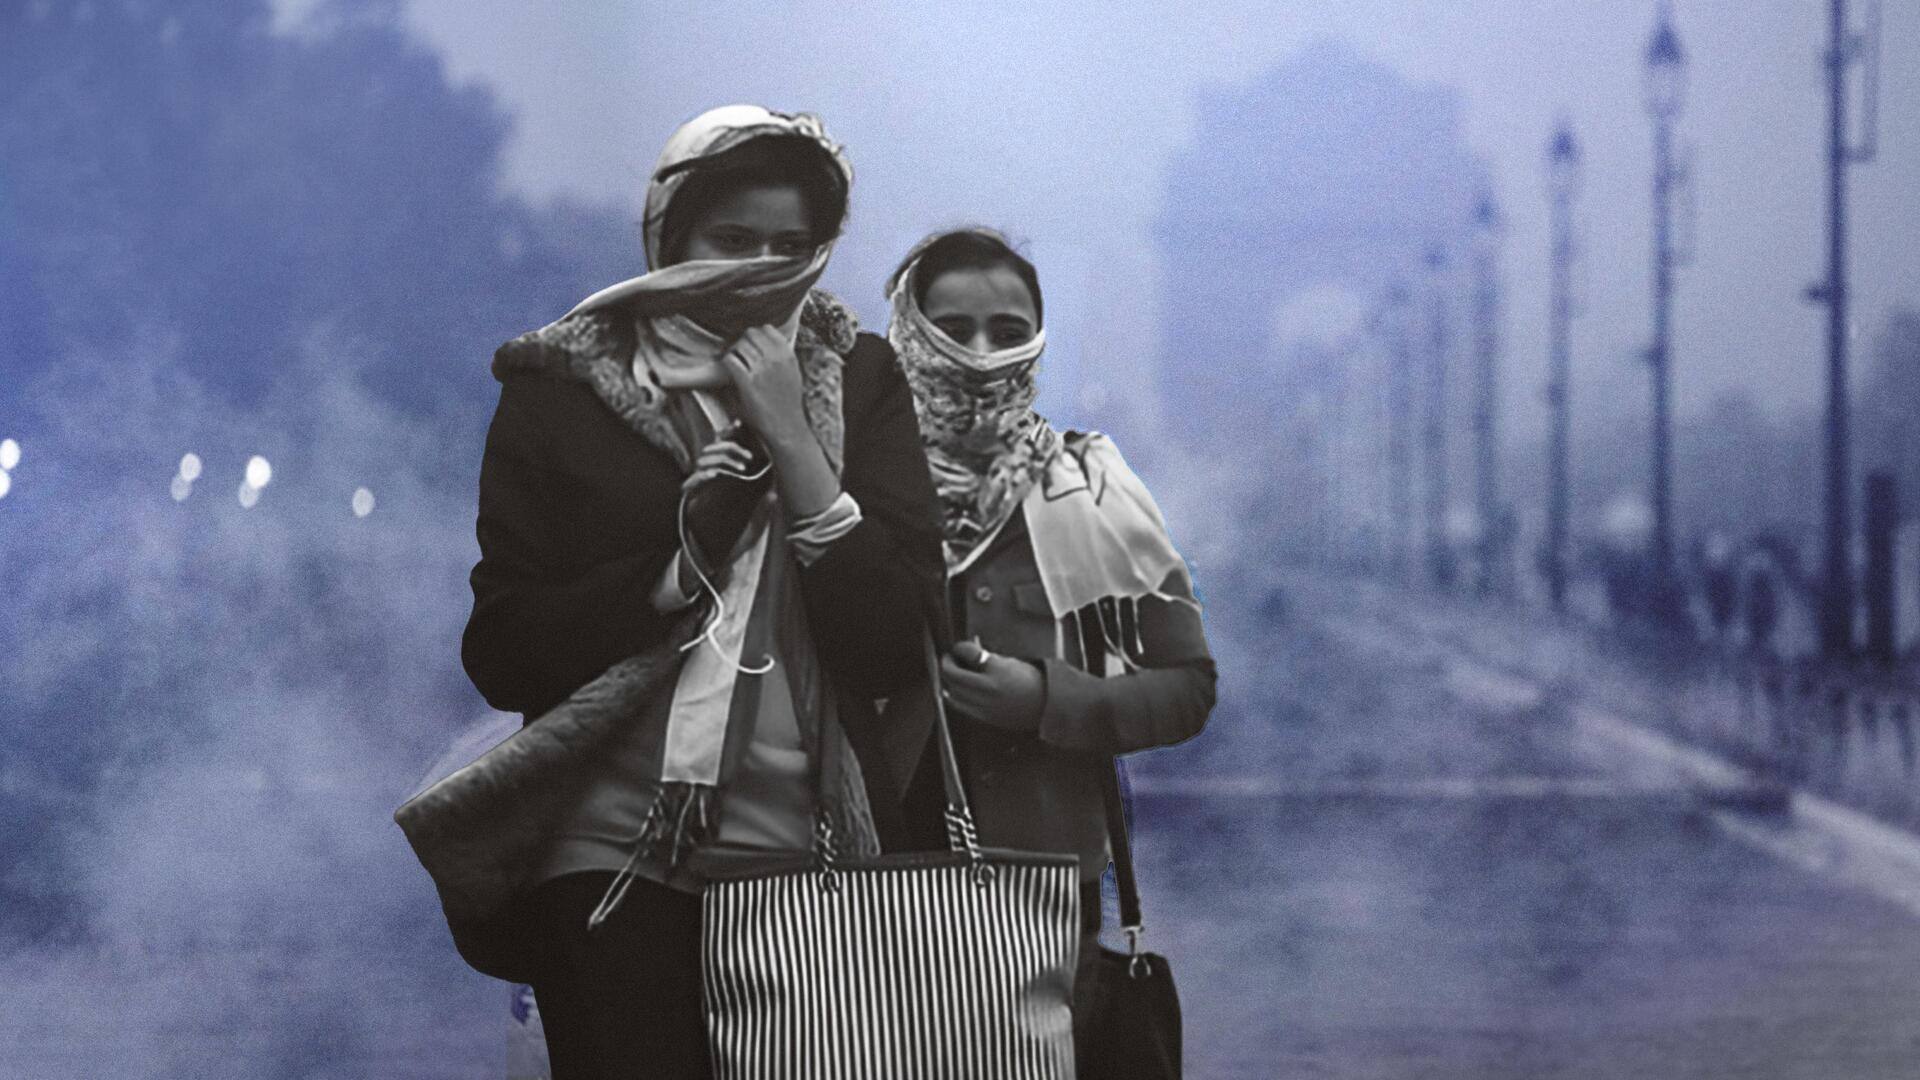 दिल्ली, मुंबई और कोलकाता दुनिया के शीर्ष प्रदूषित शहरों में शामिल, सांस लेना हुआ मुश्किल